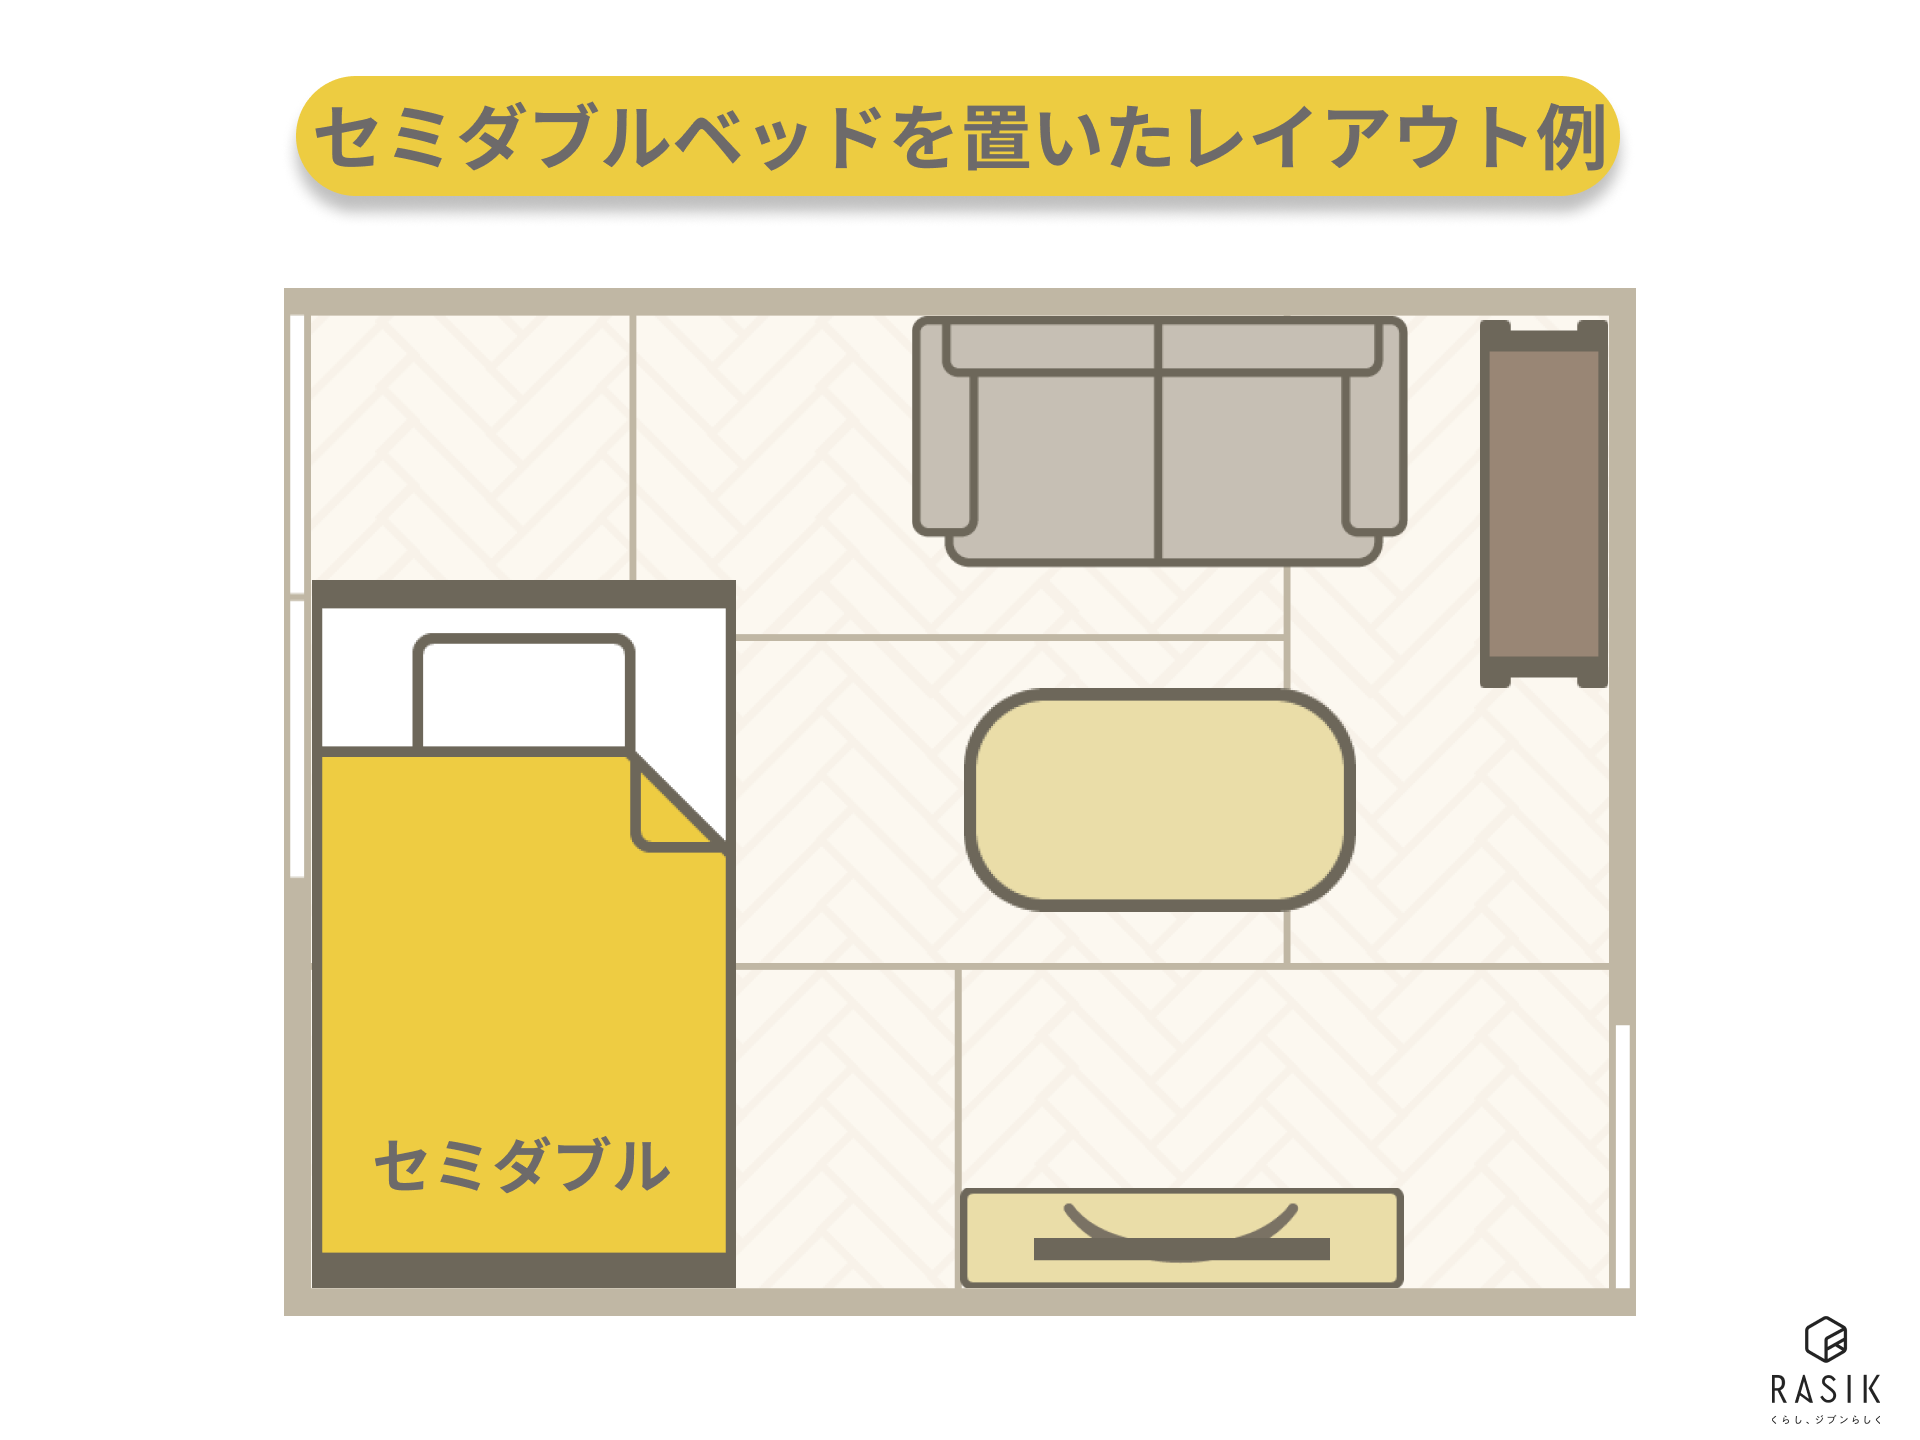 6畳の一人暮らしの部屋にセミダブルベッドを置いた例